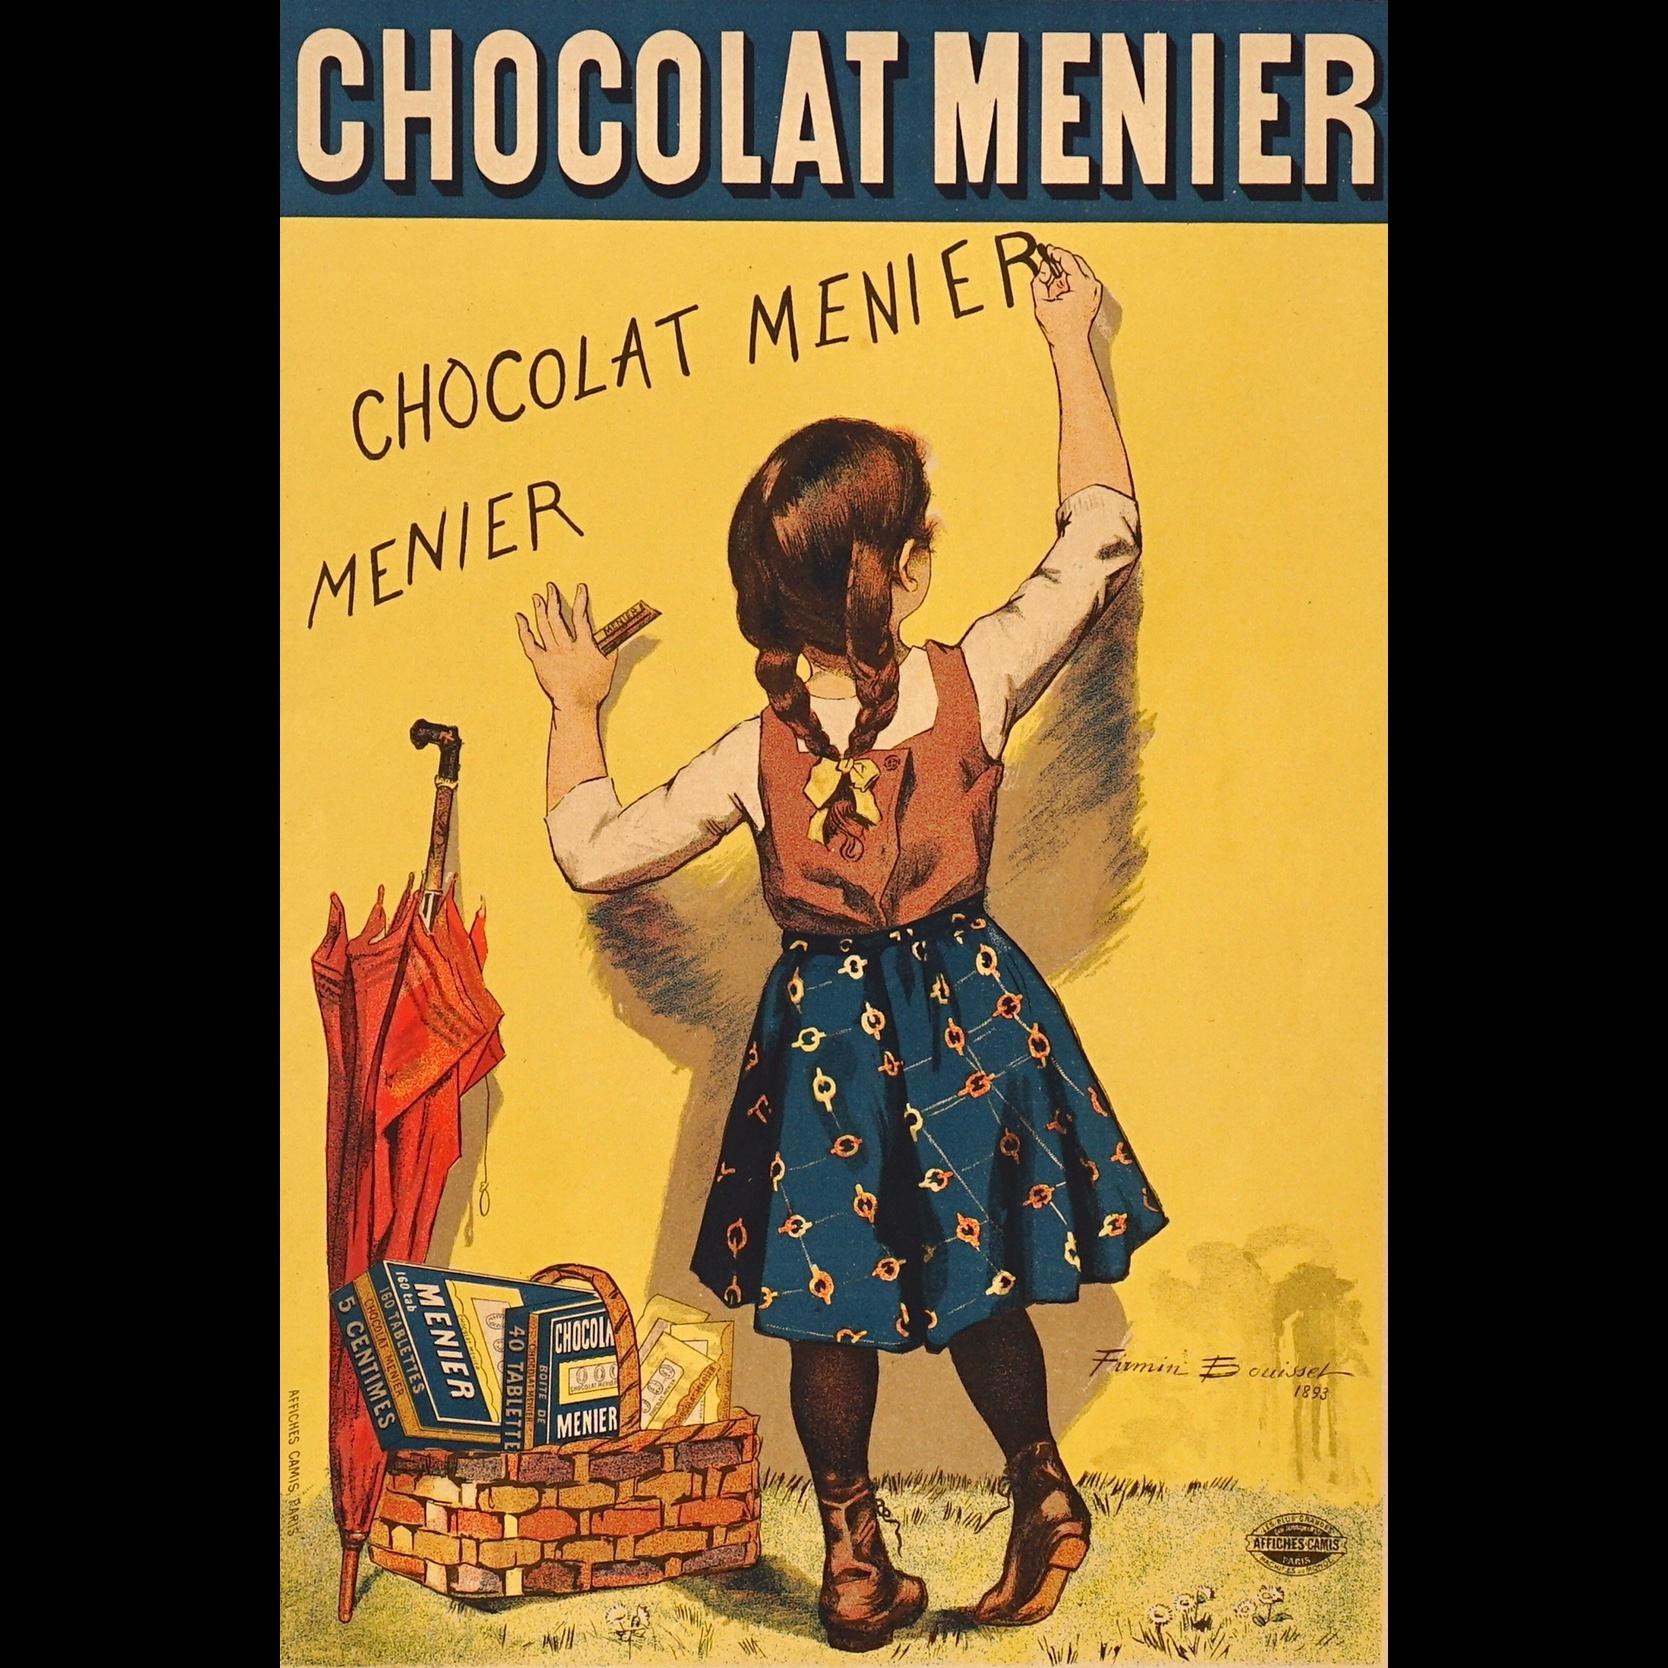 French Bouisset “Chocolat Meier” Original Art Nouveau Poster, 1895